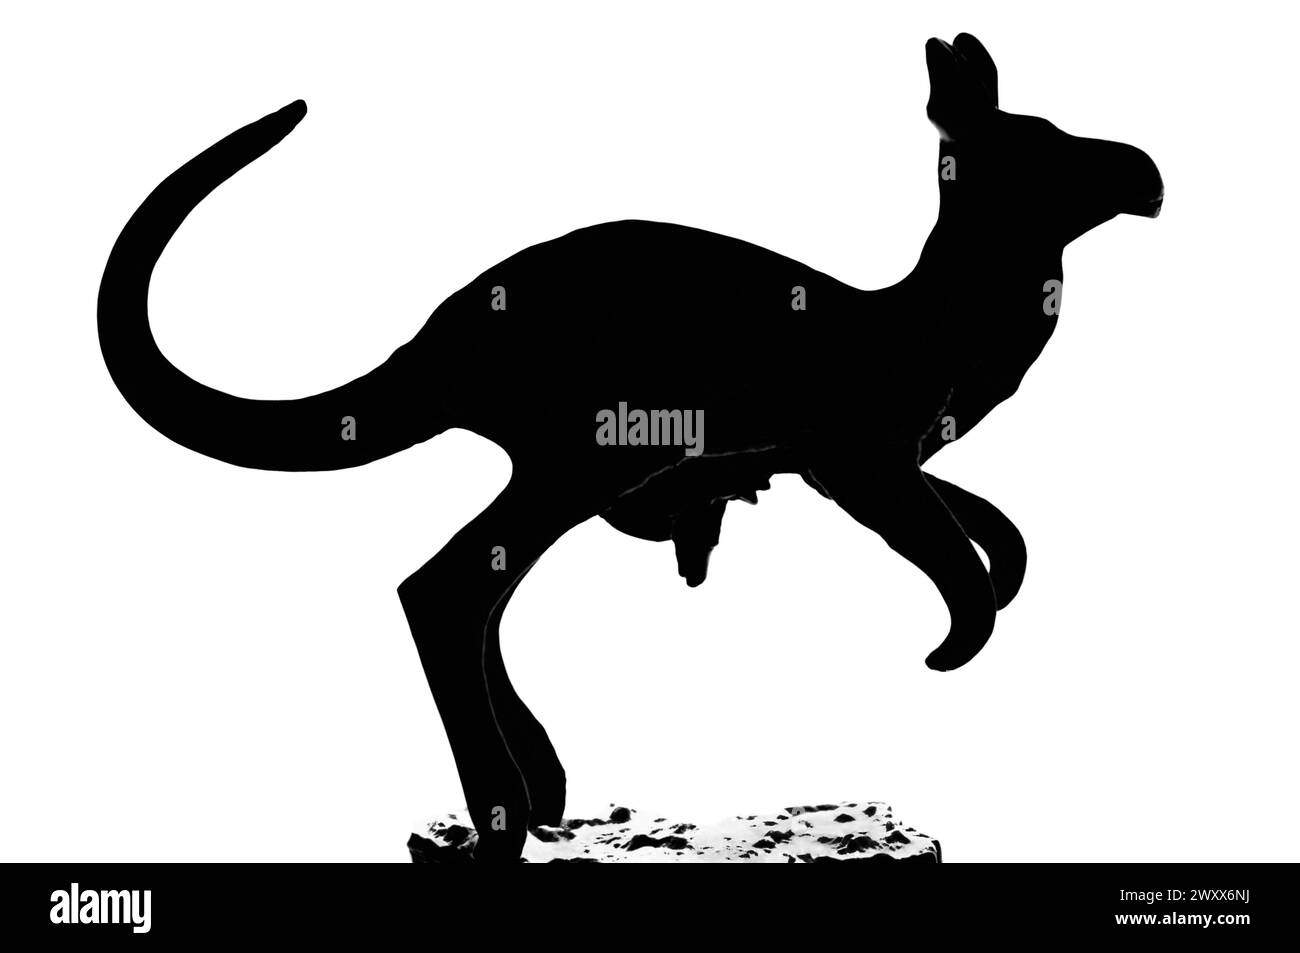 Rote Känguru- und Babybeutel-Figur, isolierte Silhouette, große detaillierte schwarze horizontale Makronaht, noch vorhandener Beutelausschnitt, gebürtiger Australier Stockfoto